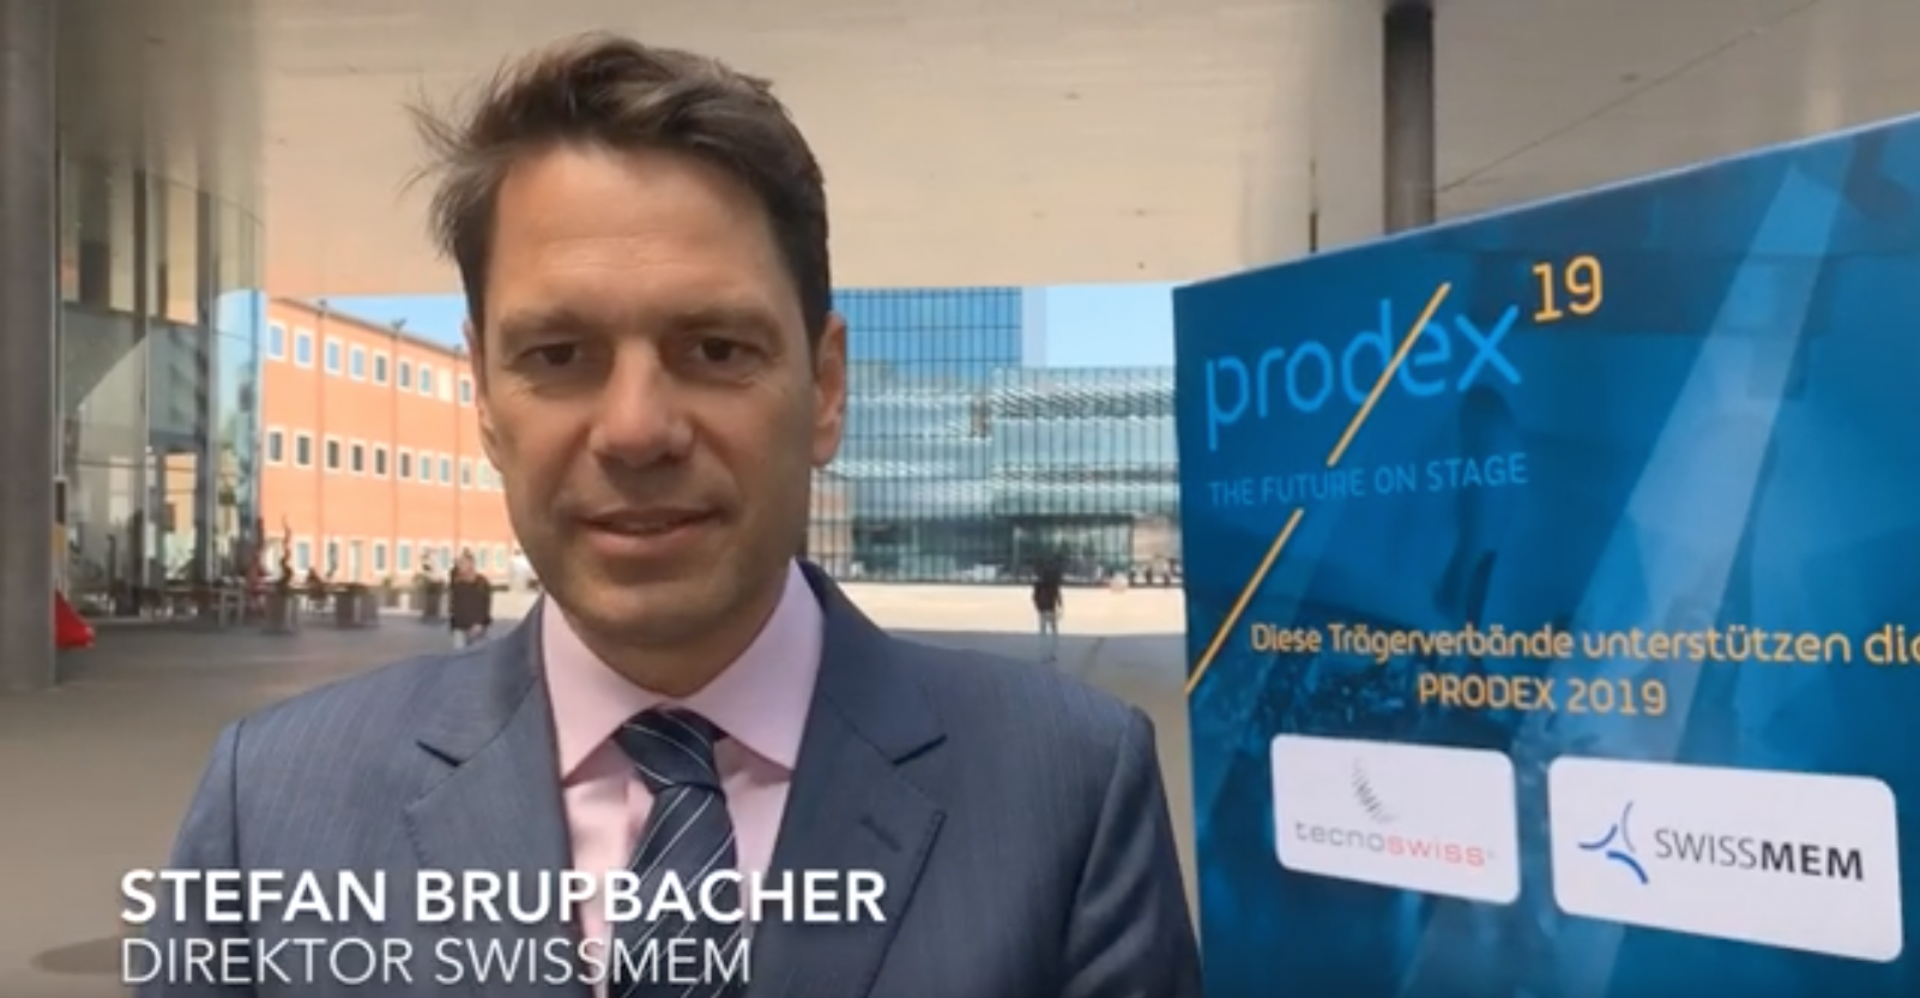 Stefan Brupbacher mit Swissmem zu Besuch an der PRODEX Messe in Basel